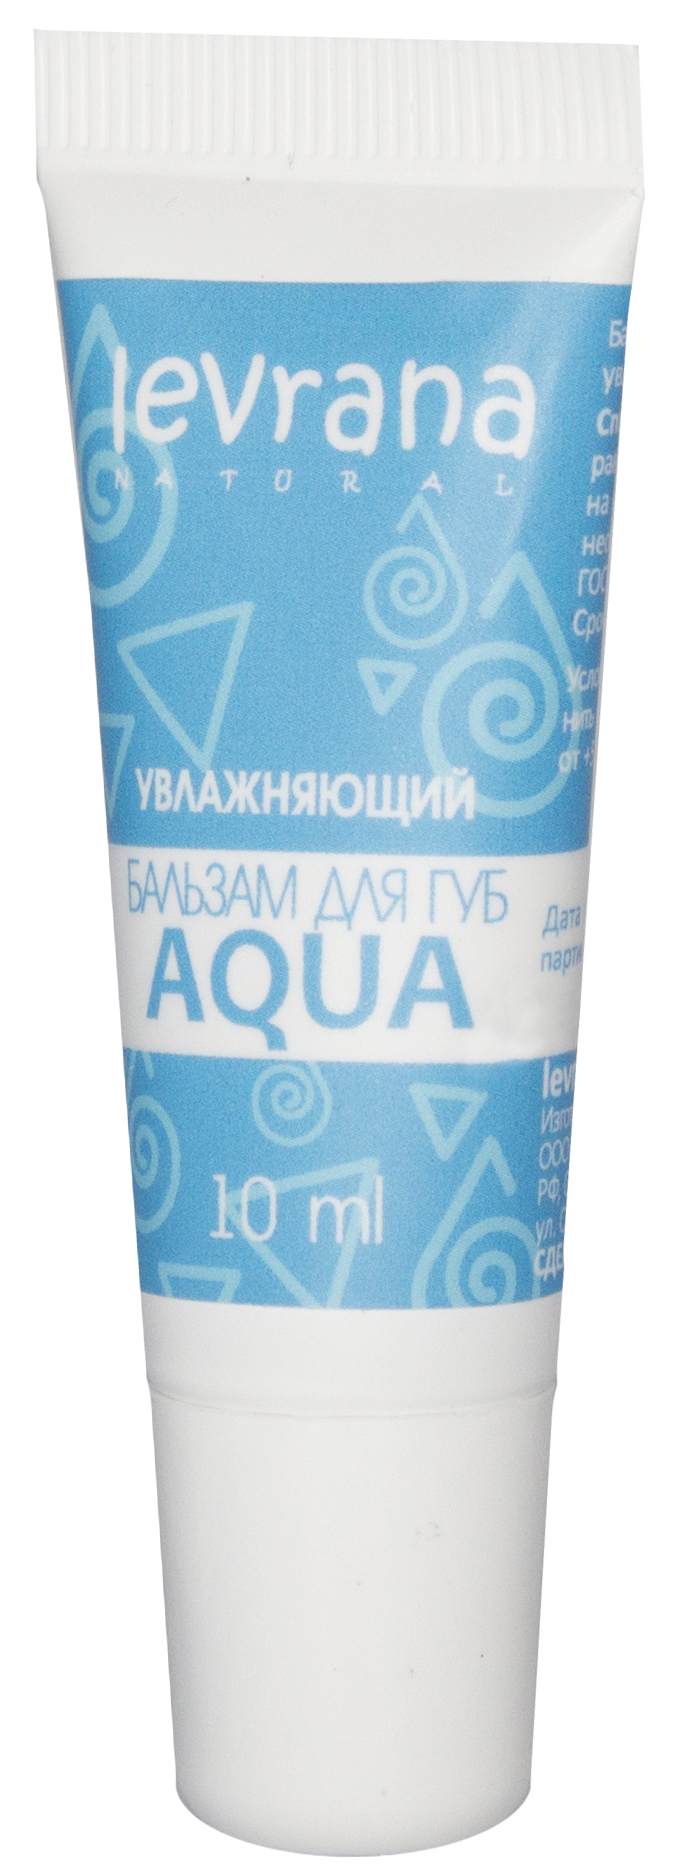 Купить Бальзам для губ Levrana Aqua Увлажняющий 10 мл, Россия